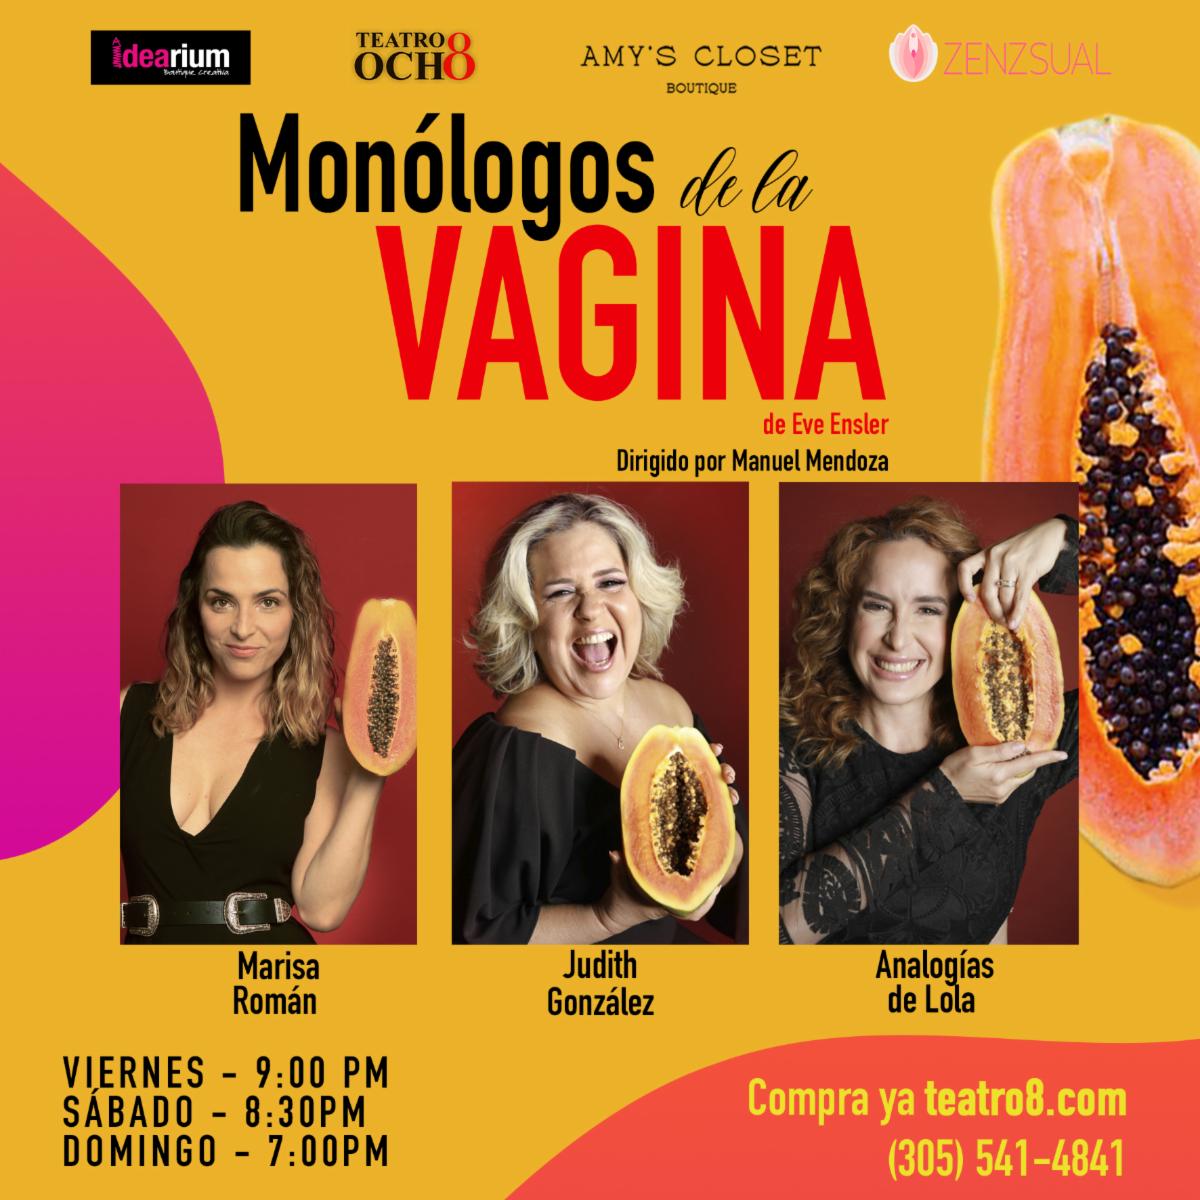 Ultimas semanas de Monólogos de la Vagina, compra ya tu ticket en teatro8.com ☎️305-541-4841 #Teatro #Miami #Teatro8 #TeatroEnMiami #LatinxTheater #HispanicTheater #MonologosDeLaVagina #Comedia #Humor #Reflexion conta.cc/3DVNj2r
conta.cc/3T4EkBl